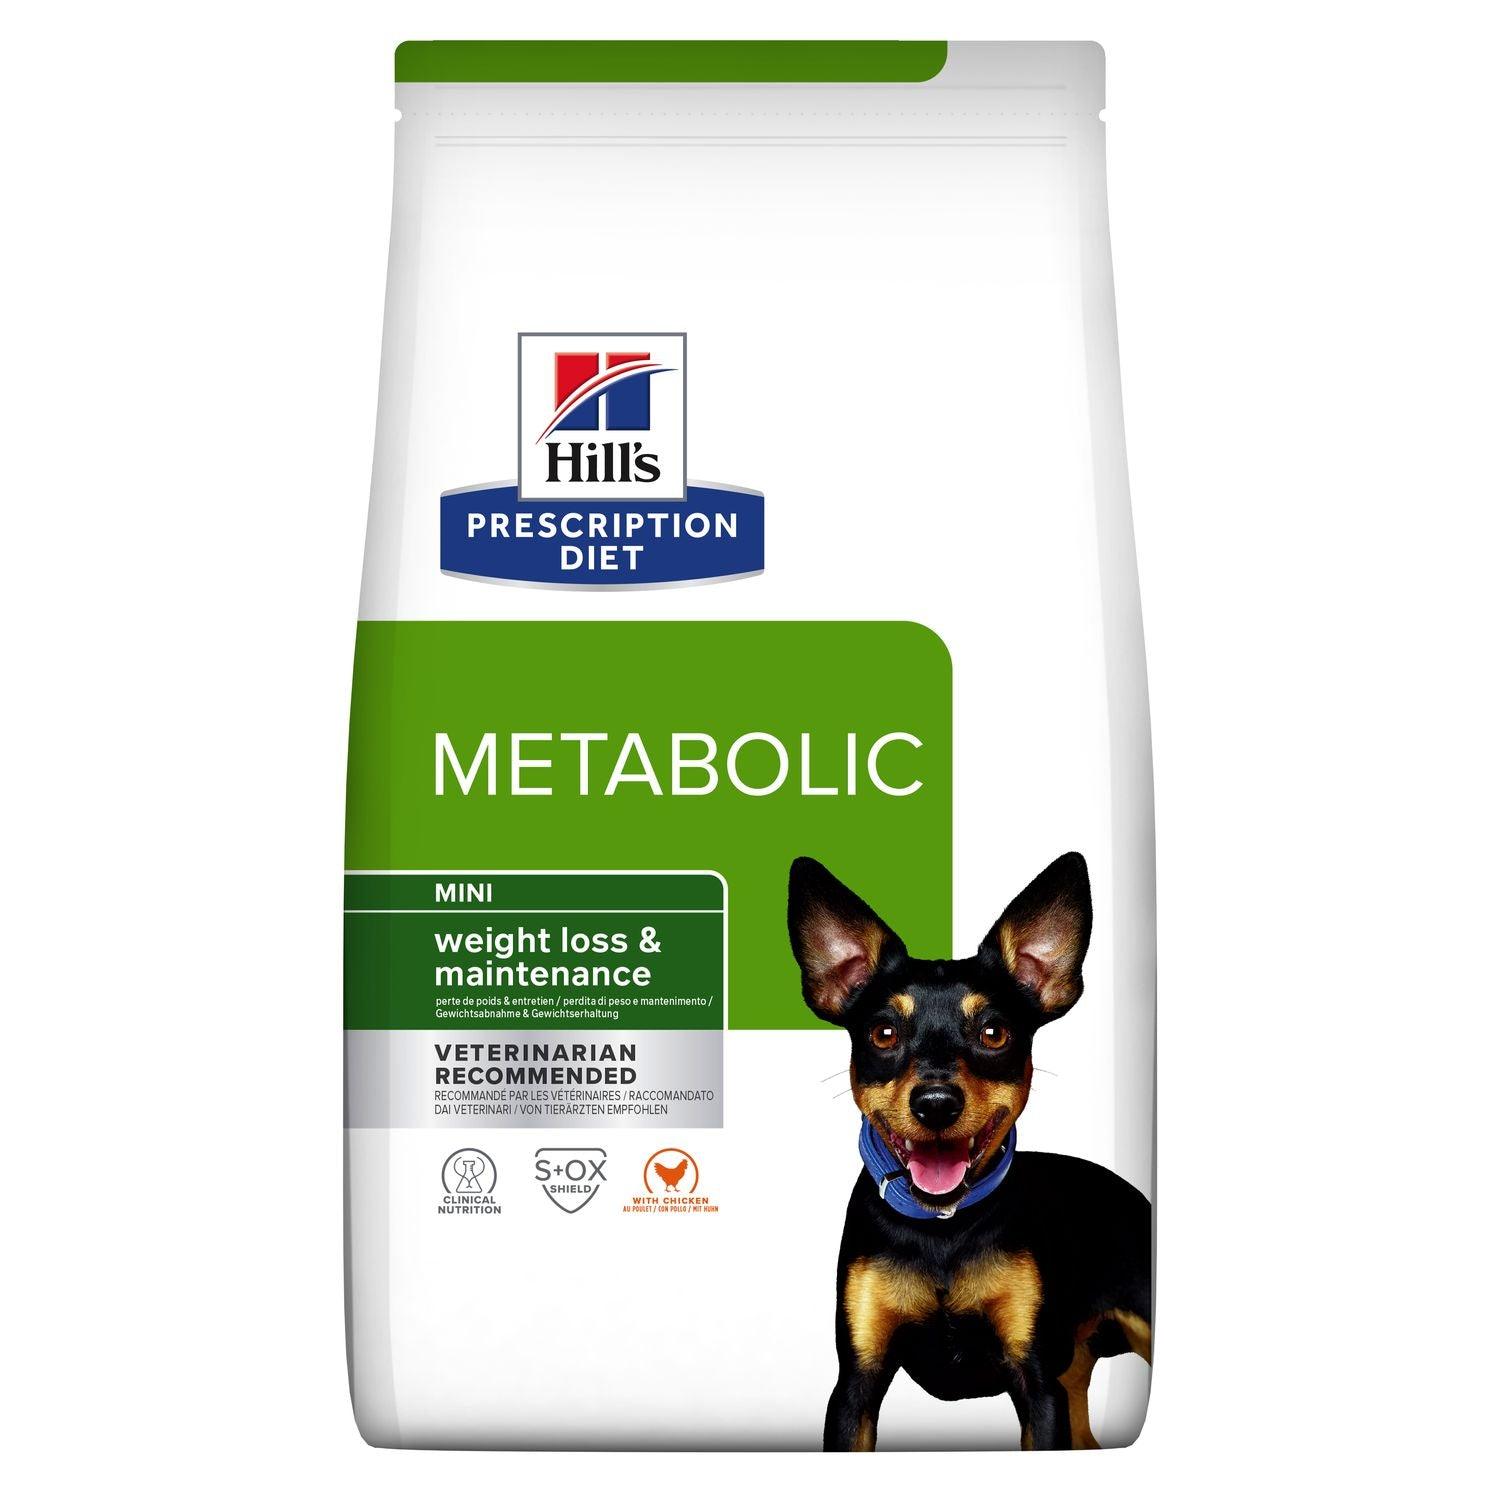 Canine Metabolic Mini - Hill's Prescription Diet - Alter:Adult, Alter:Senior, Erkrankung:Übergewicht, Futterart:Trocken, Hersteller:Hill's Prescription Diet, Tierart:Hund - Marigin AG Onlineshop für Tierbedarf